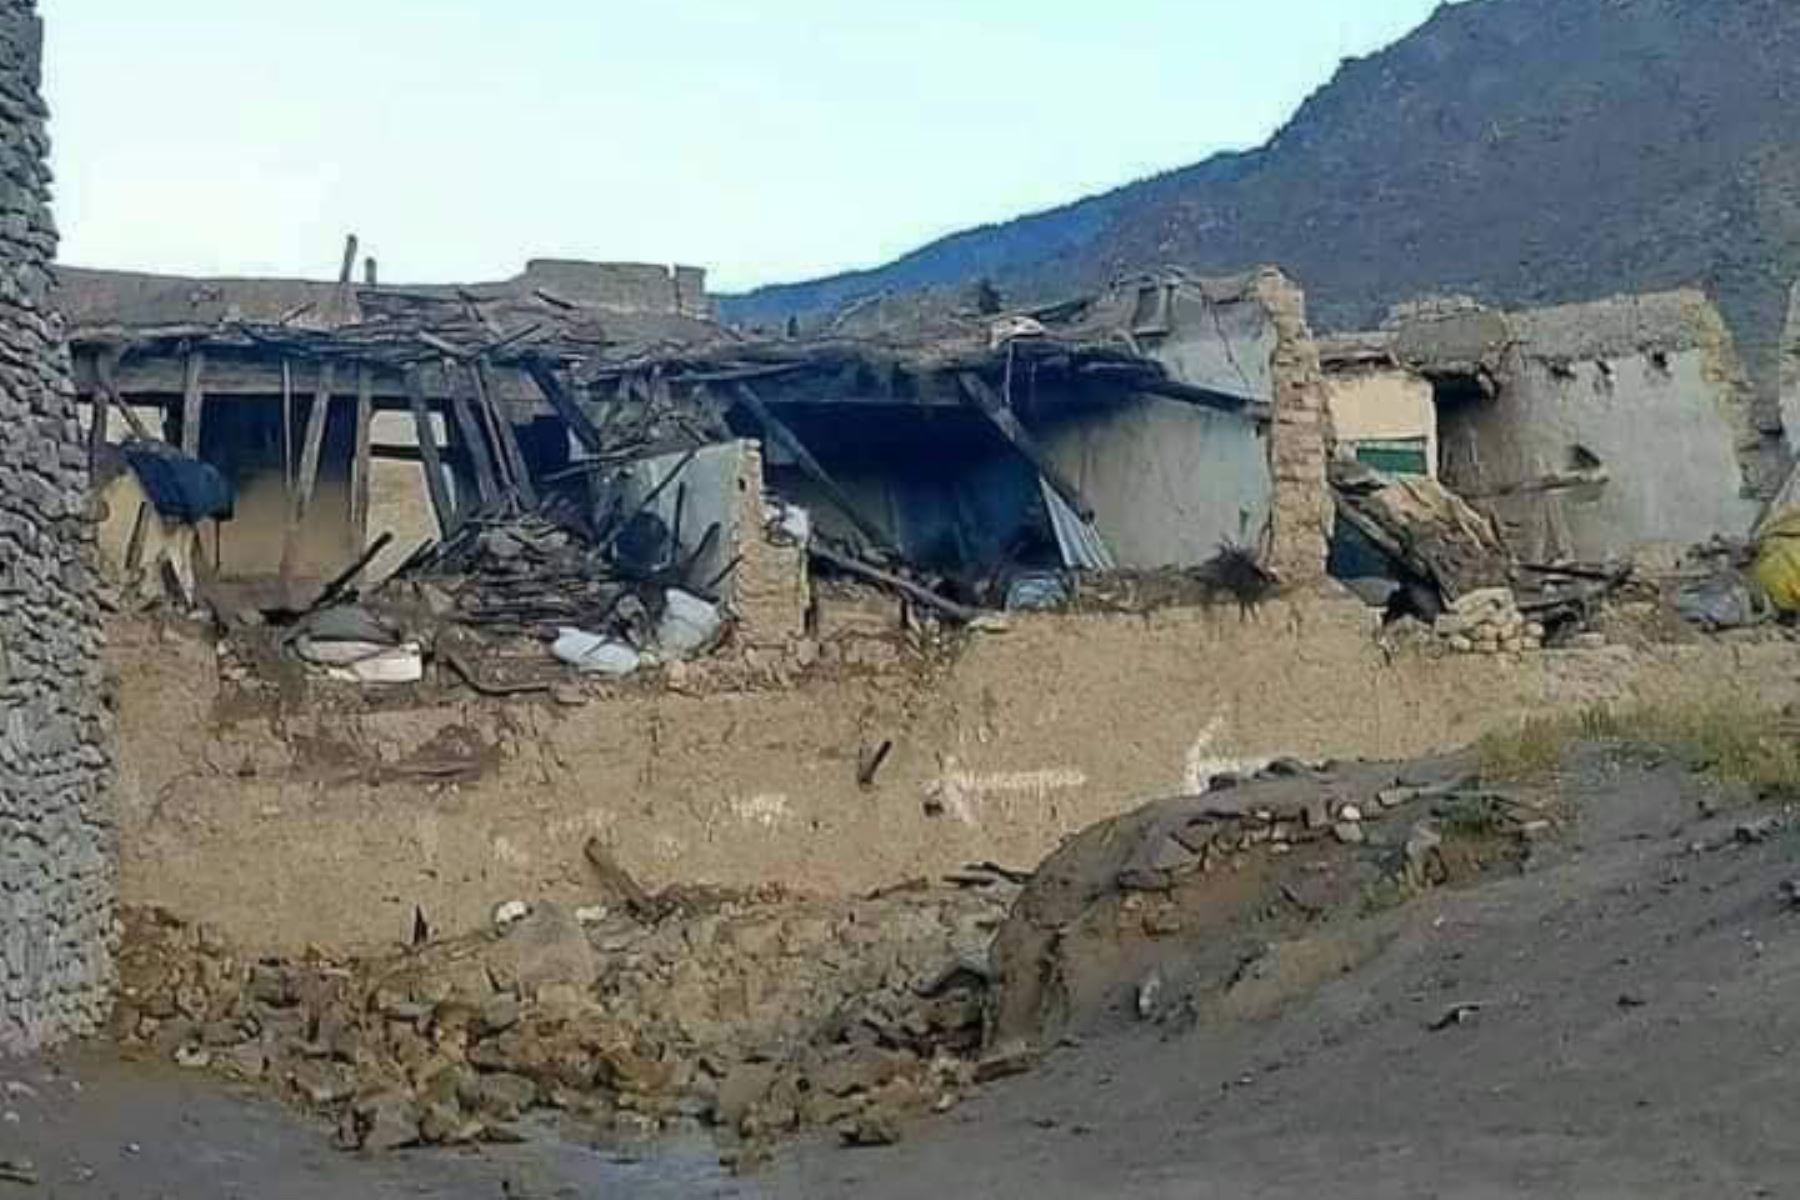 Afganistán suele sufrir terremotos, especialmente en la zona conocida como Hindu Kush, de gran actividad sísmica y habitual punto de origen de movimientos telúricos en la región. Foto: Kabul News